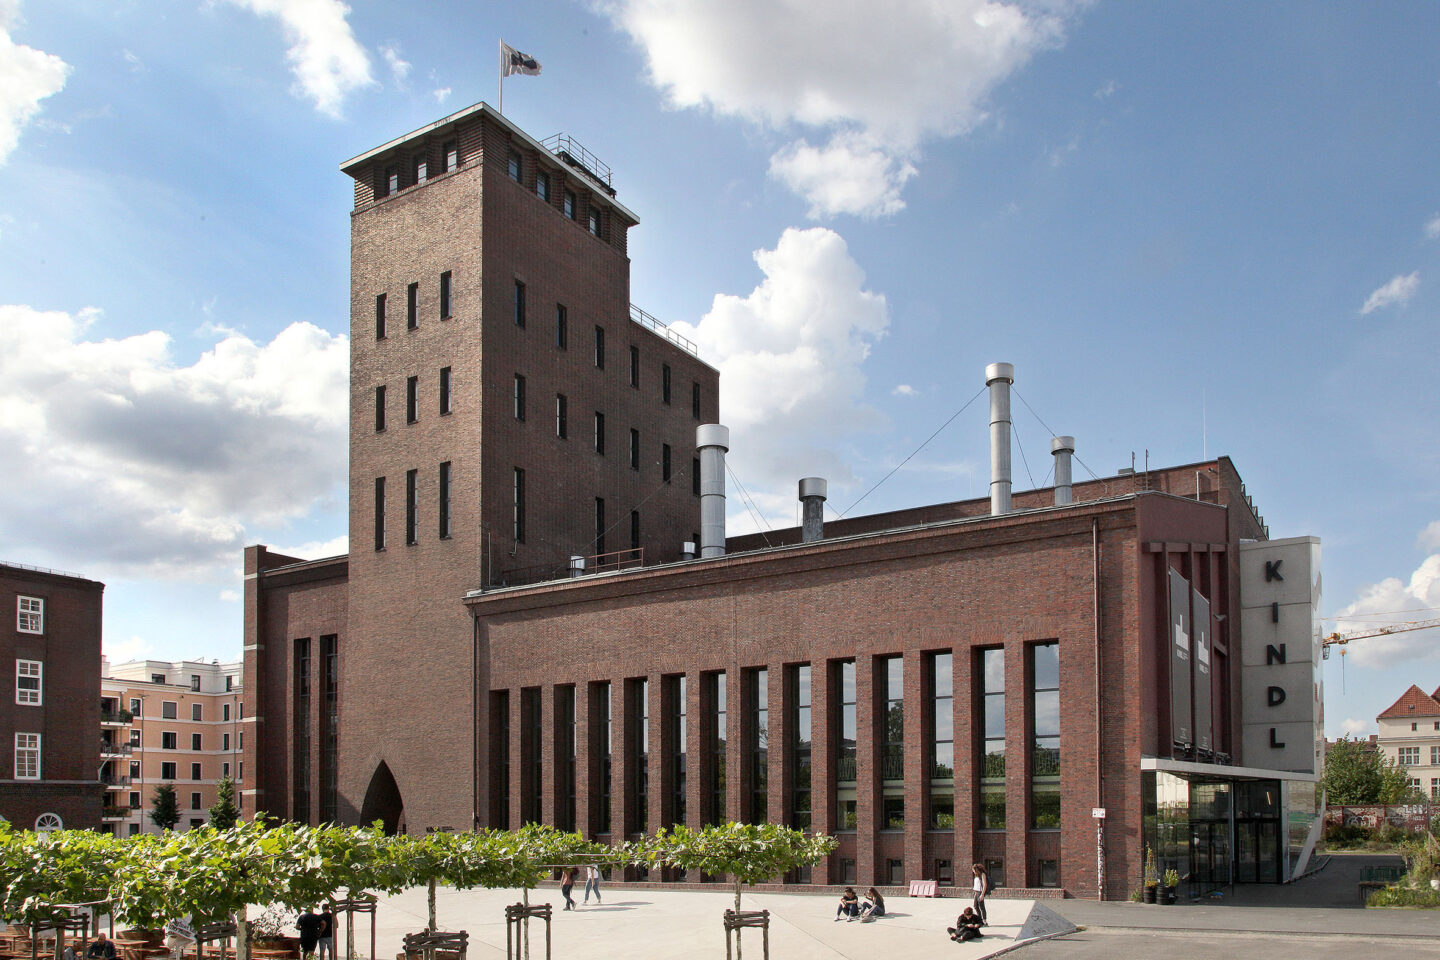 KINDL – Zentrum für zeitgenössische Kunst, Berlin, Spektakuläre Museumsbauten, alte Brauerei, Kunstgalerie